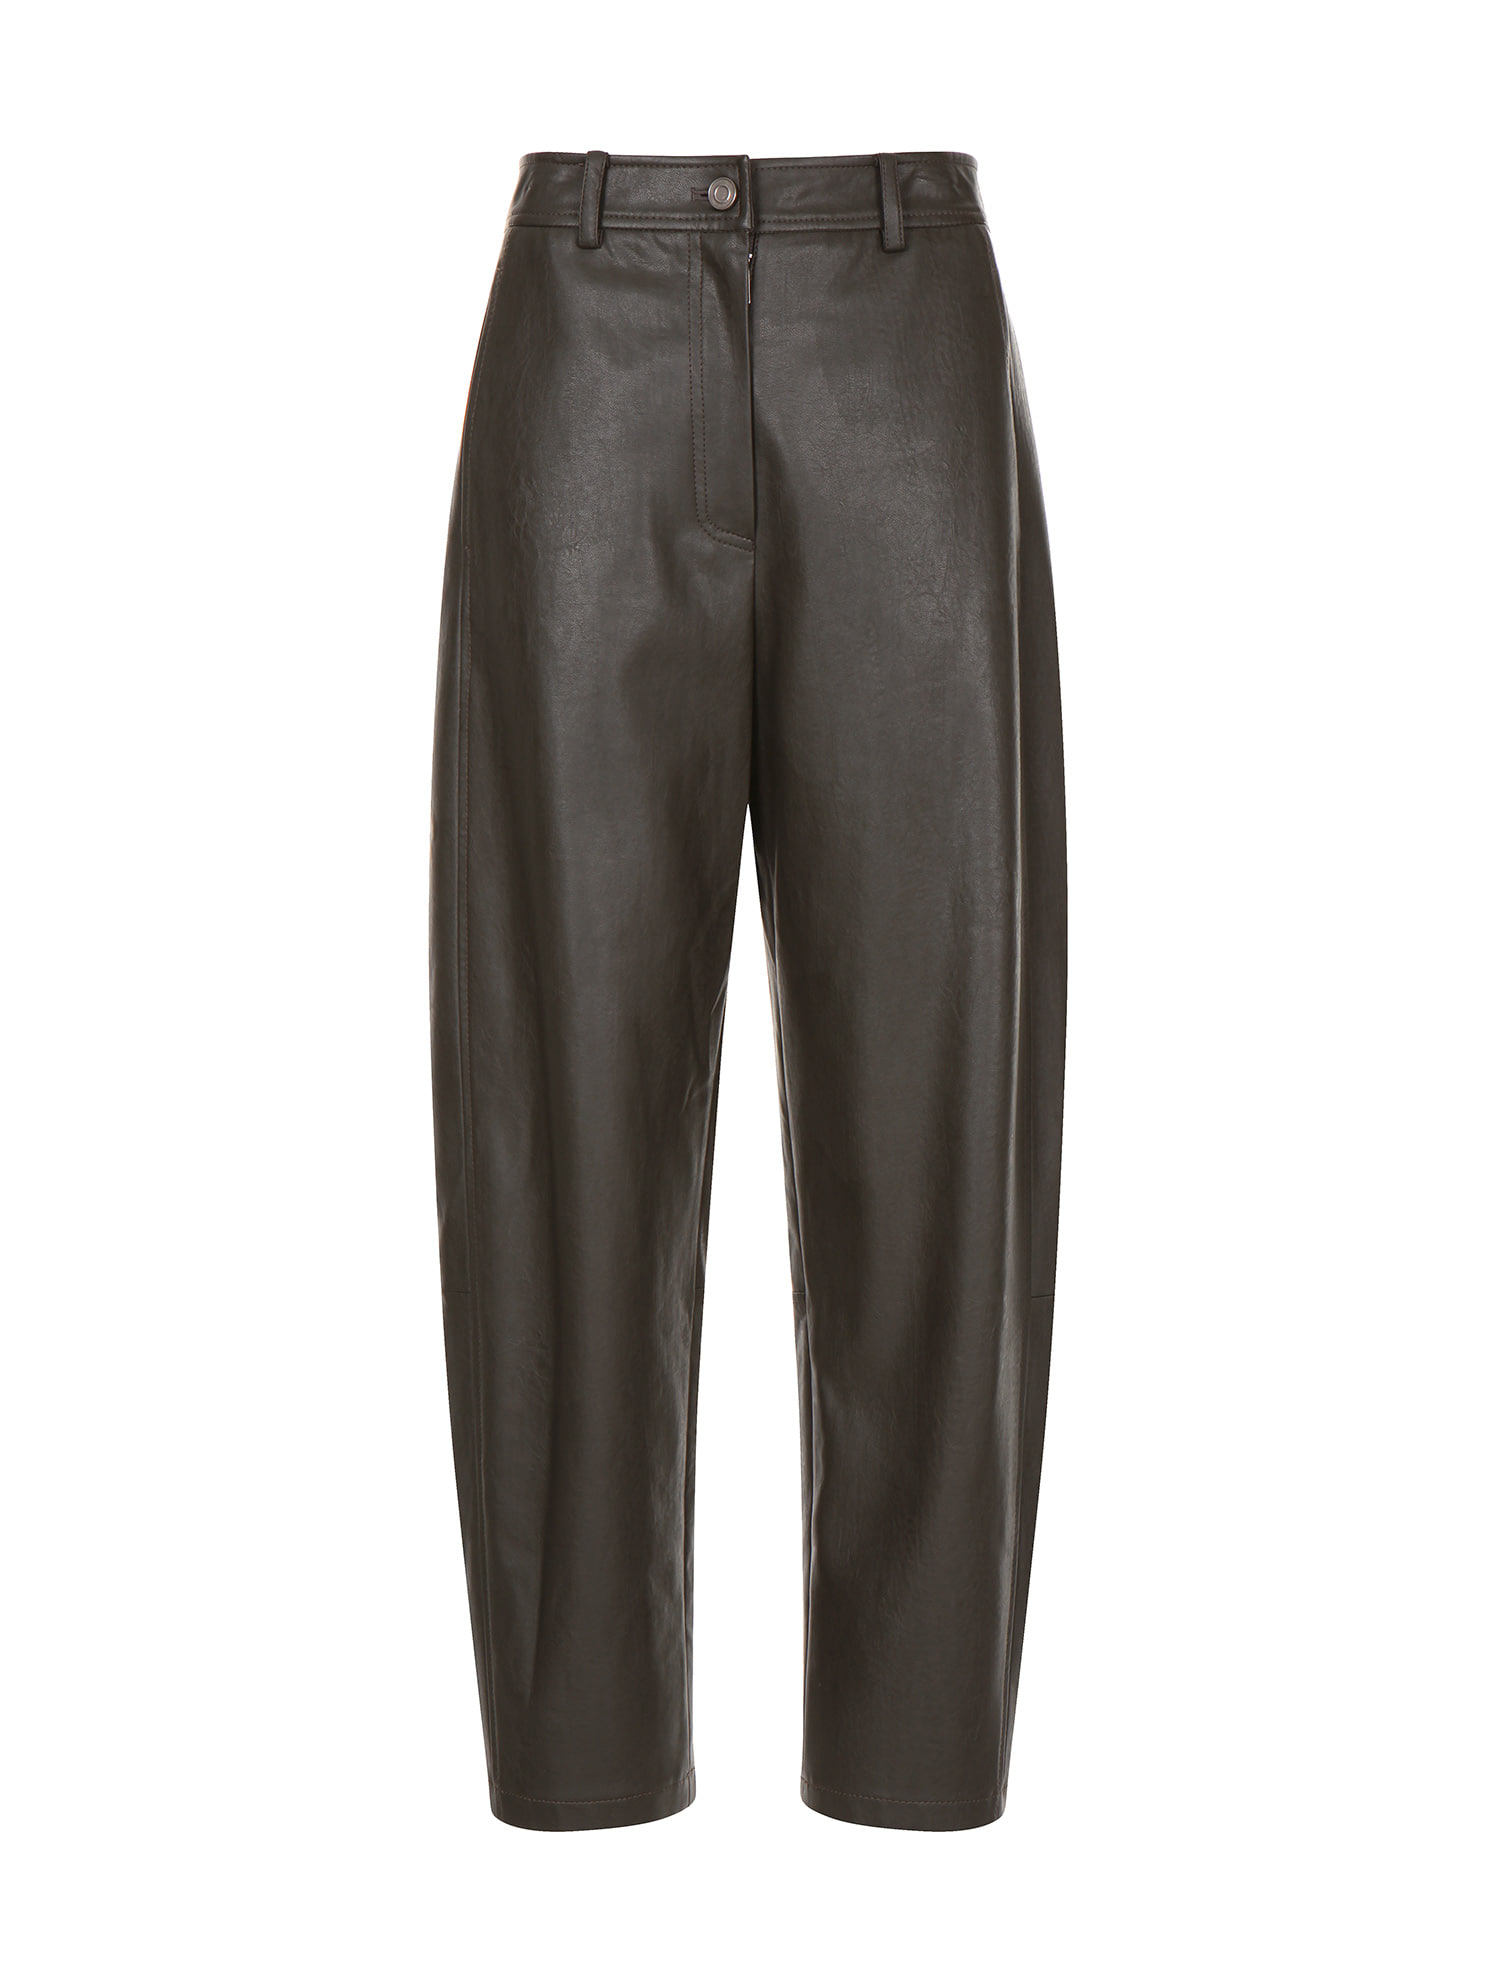 [이현이 착용]Eco-leather curved volume pants Khaki KW2AL7940_42